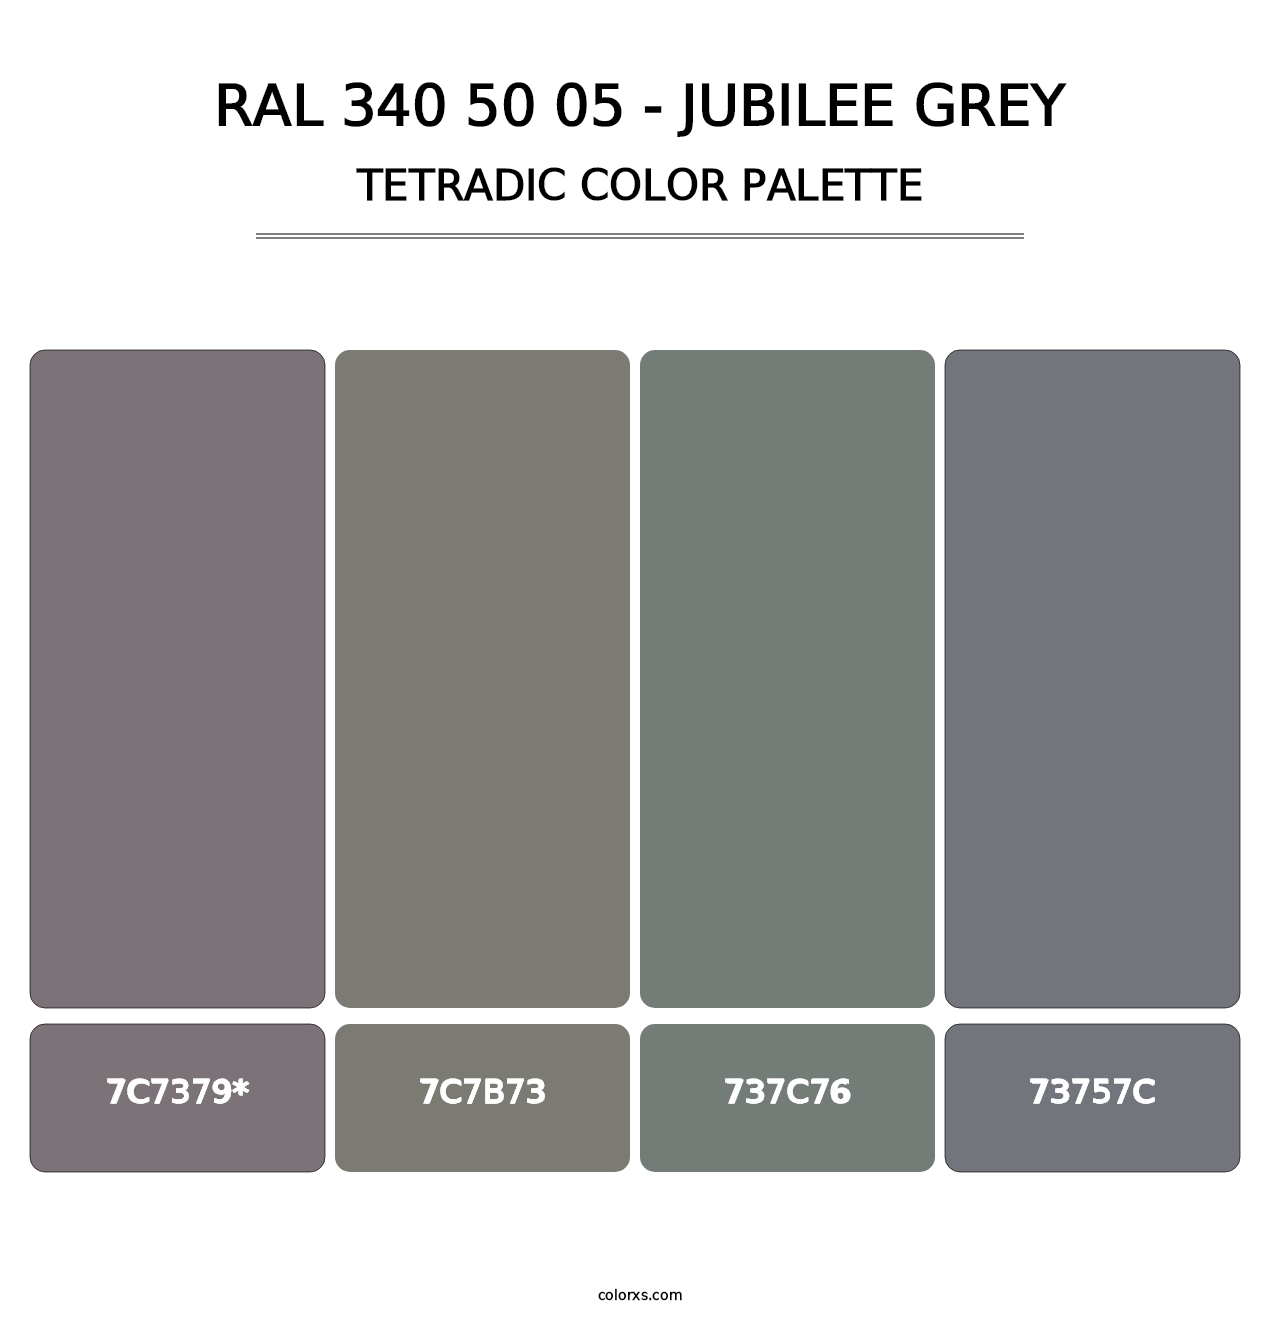 RAL 340 50 05 - Jubilee Grey - Tetradic Color Palette